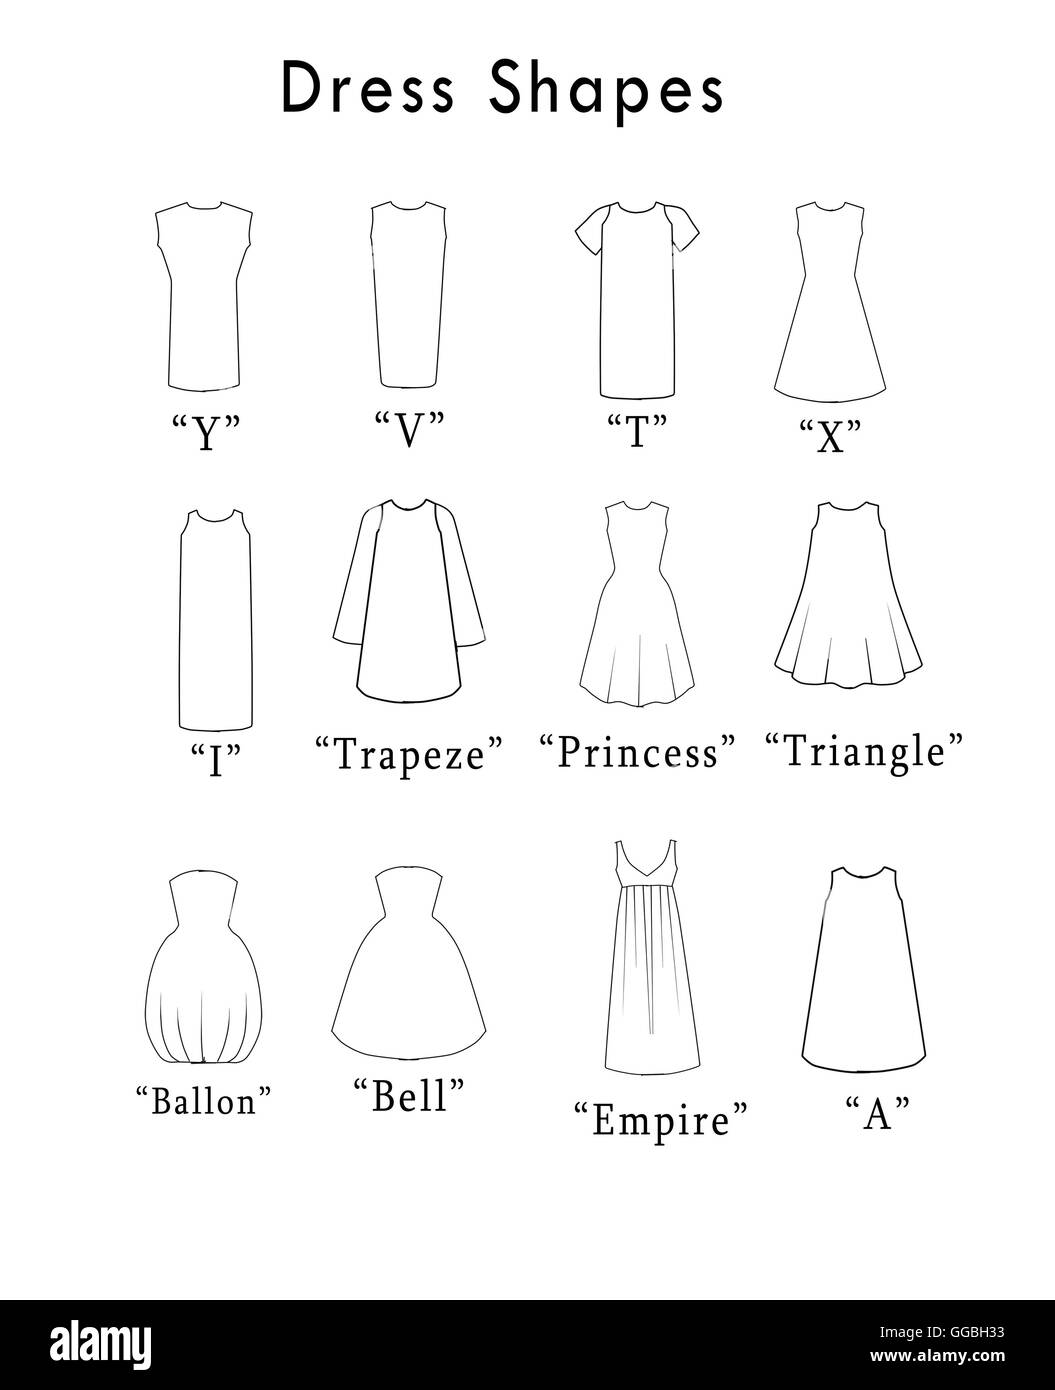 Ilustración de los vestidos de formas y líneas de corte Fotografía de stock  - Alamy